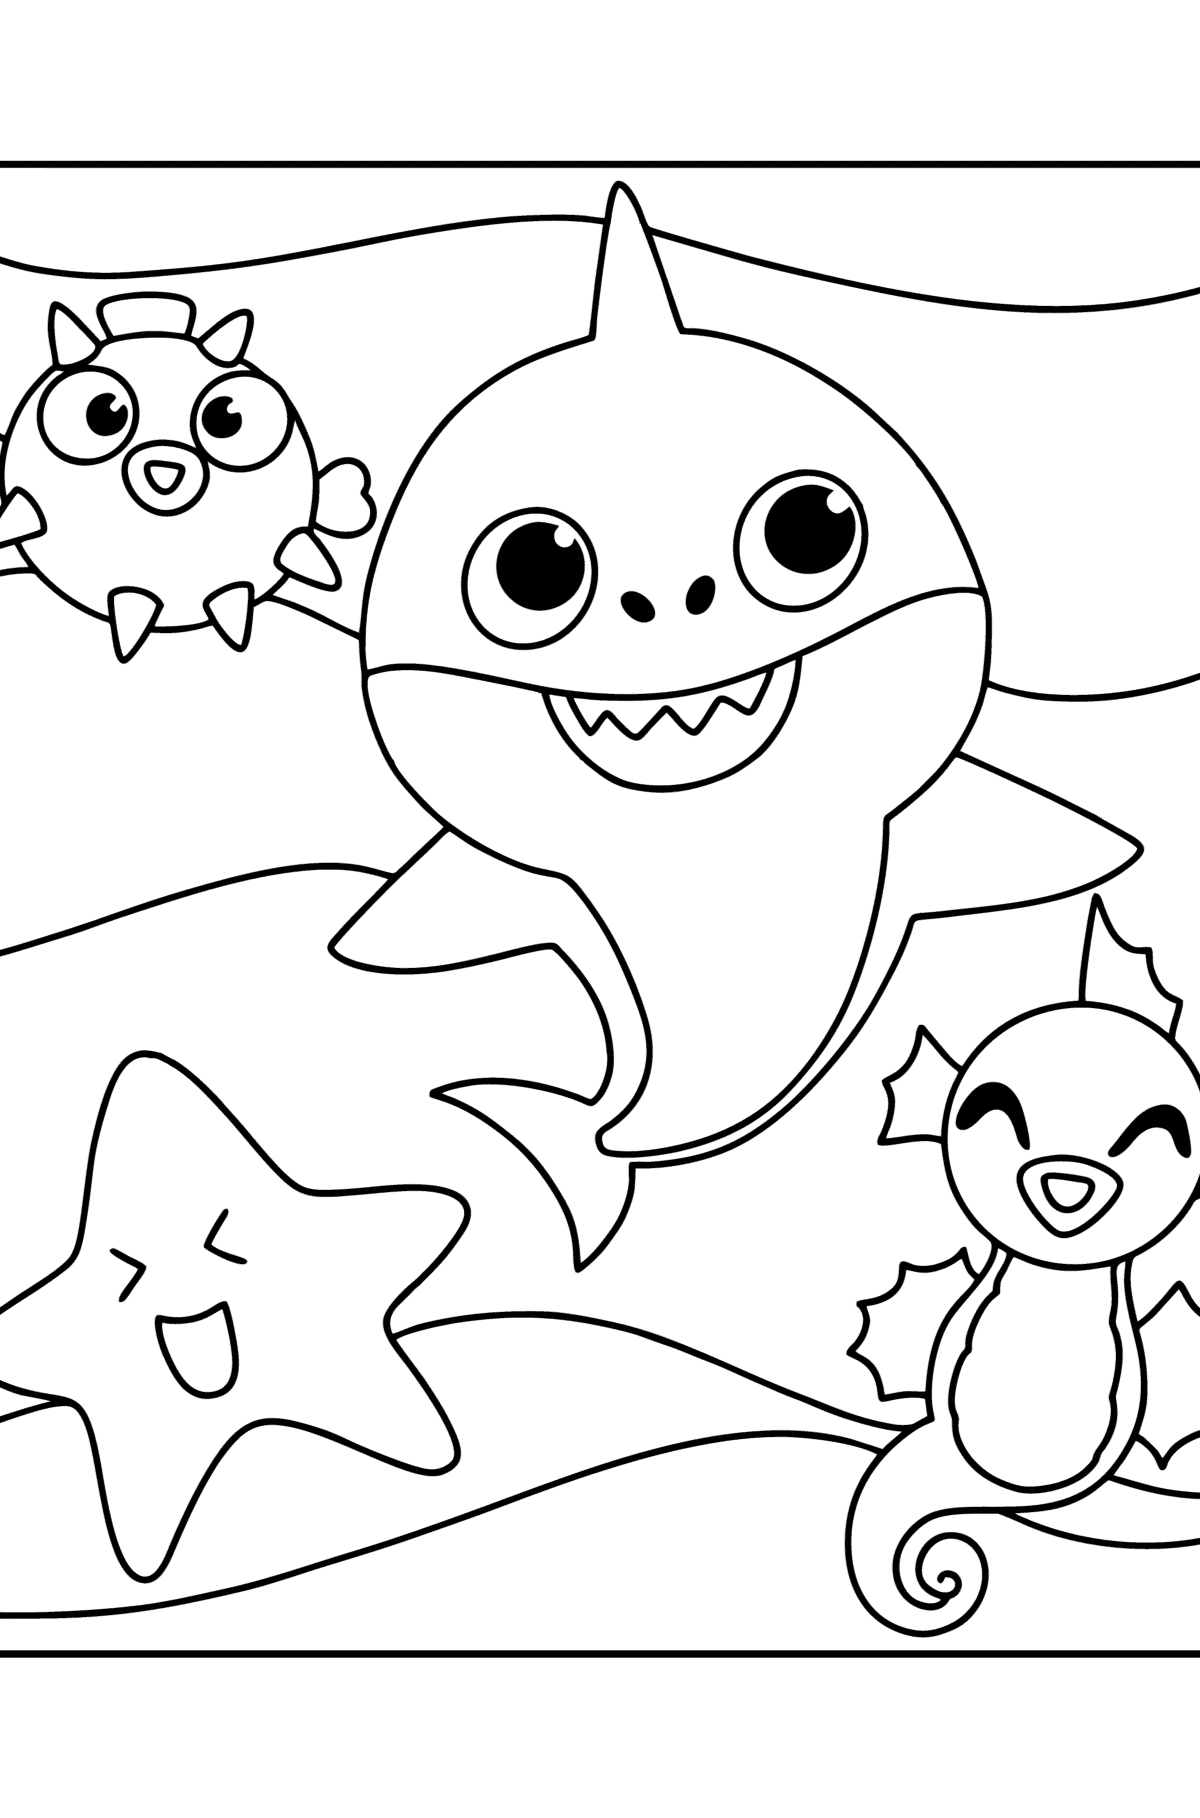 Dibujo de Amigos Baby shark para colorear - Dibujos para Colorear para Niños